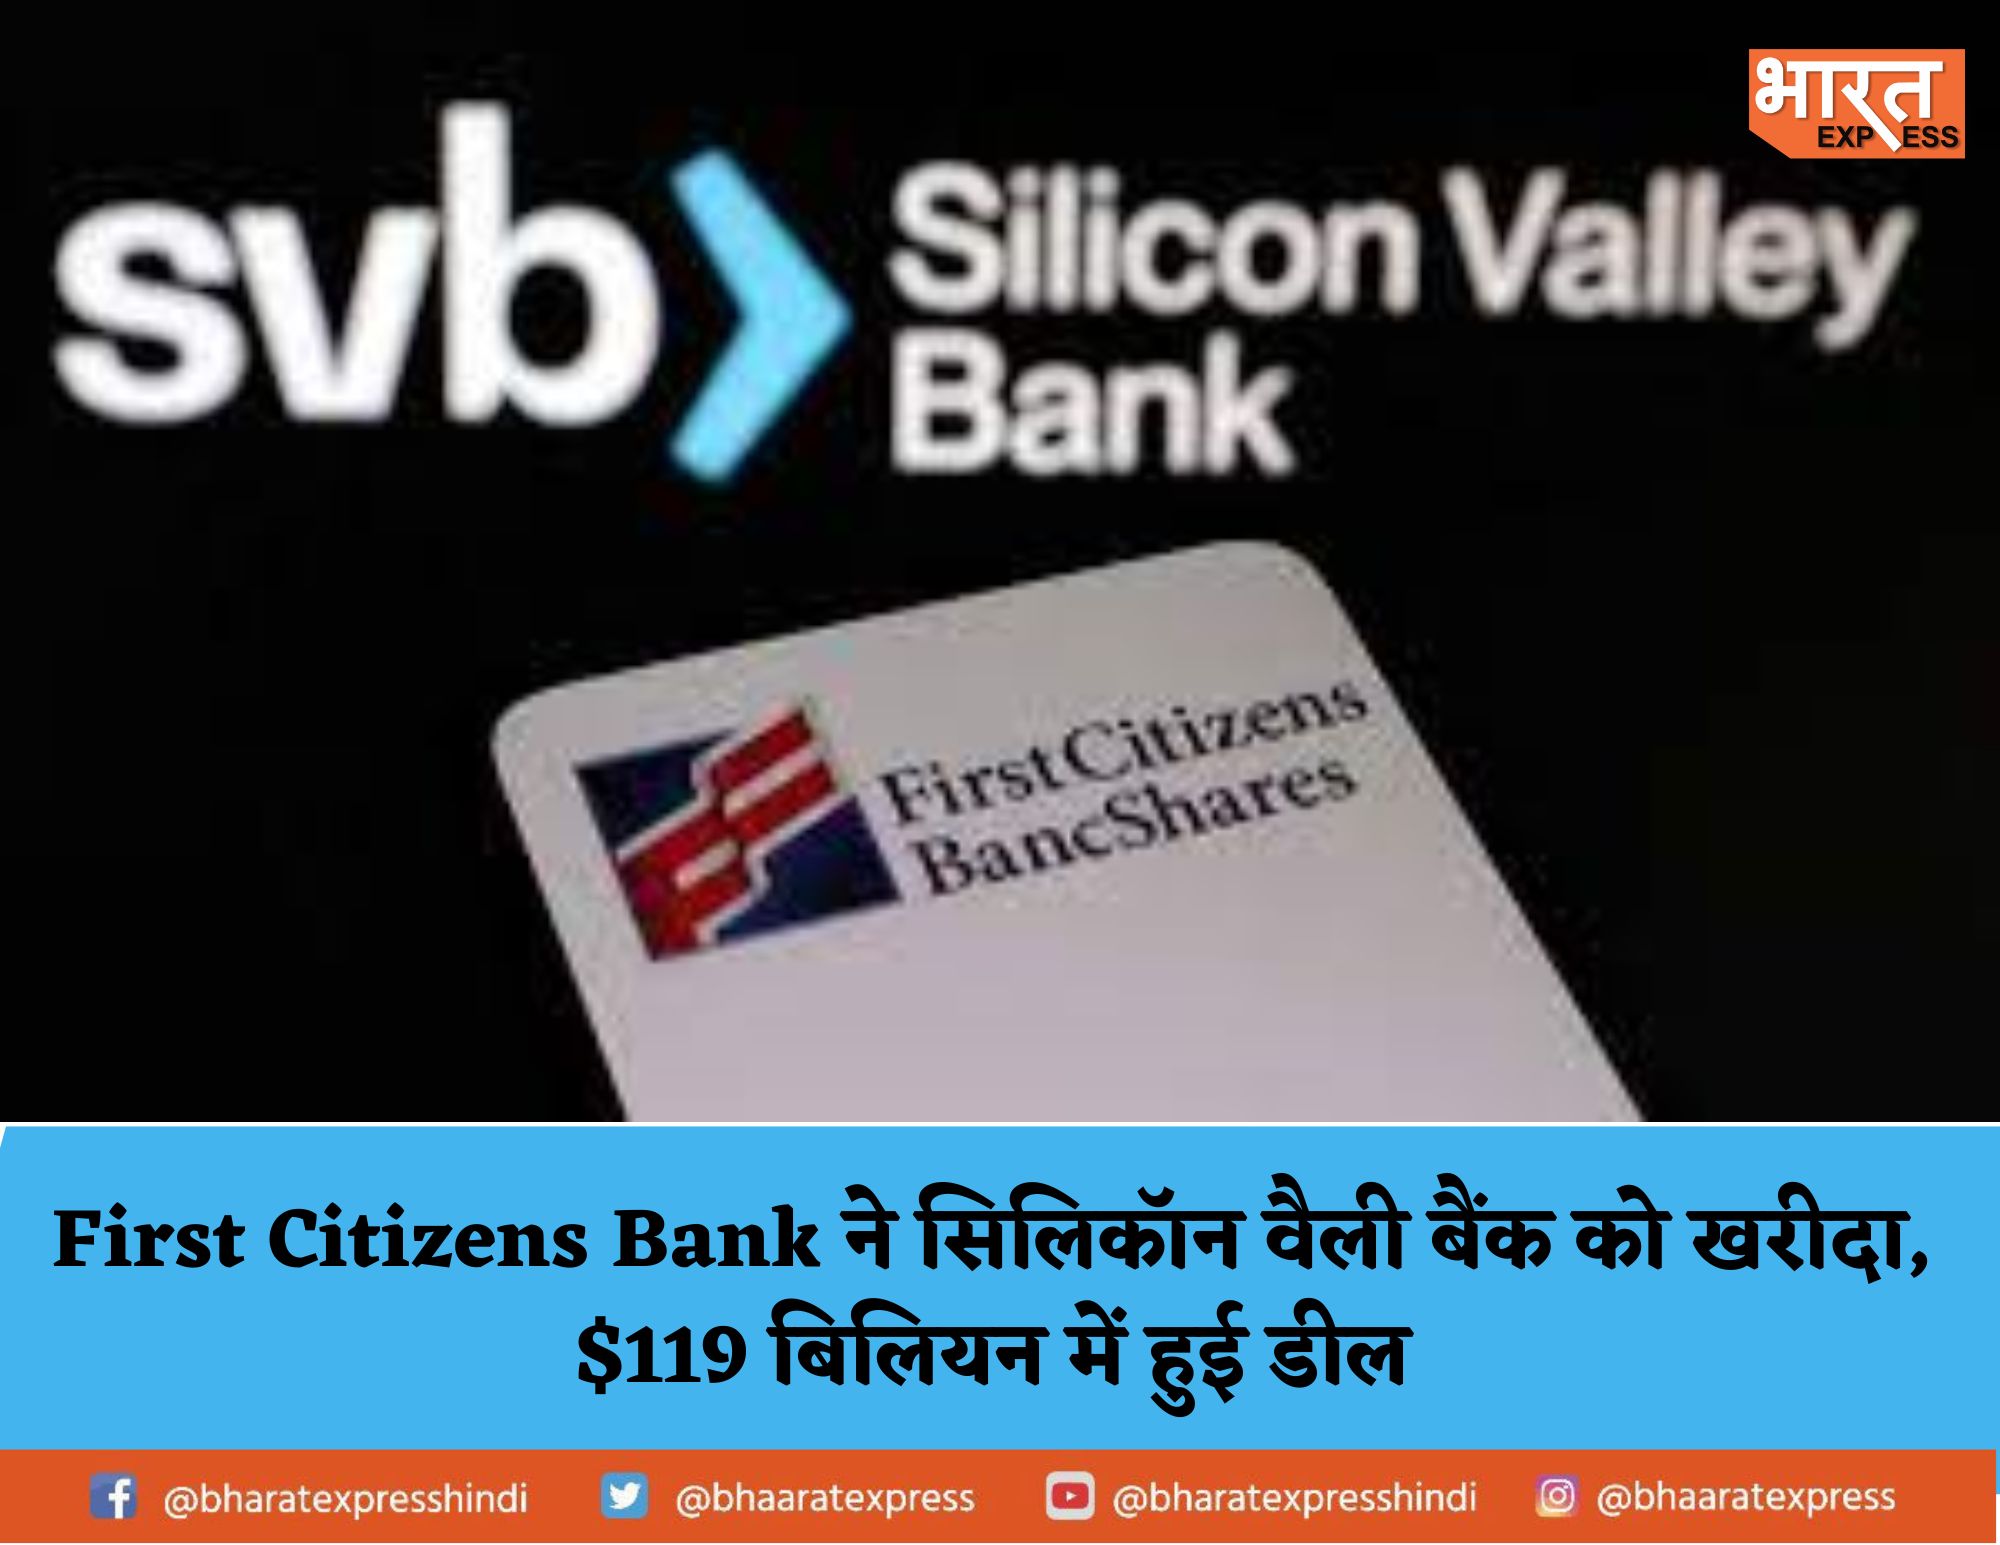 First Citizens Bank ने सिलिकॉन वैली बैंक को खरीदा , 119 बिलियन डॉलर में हुई डील